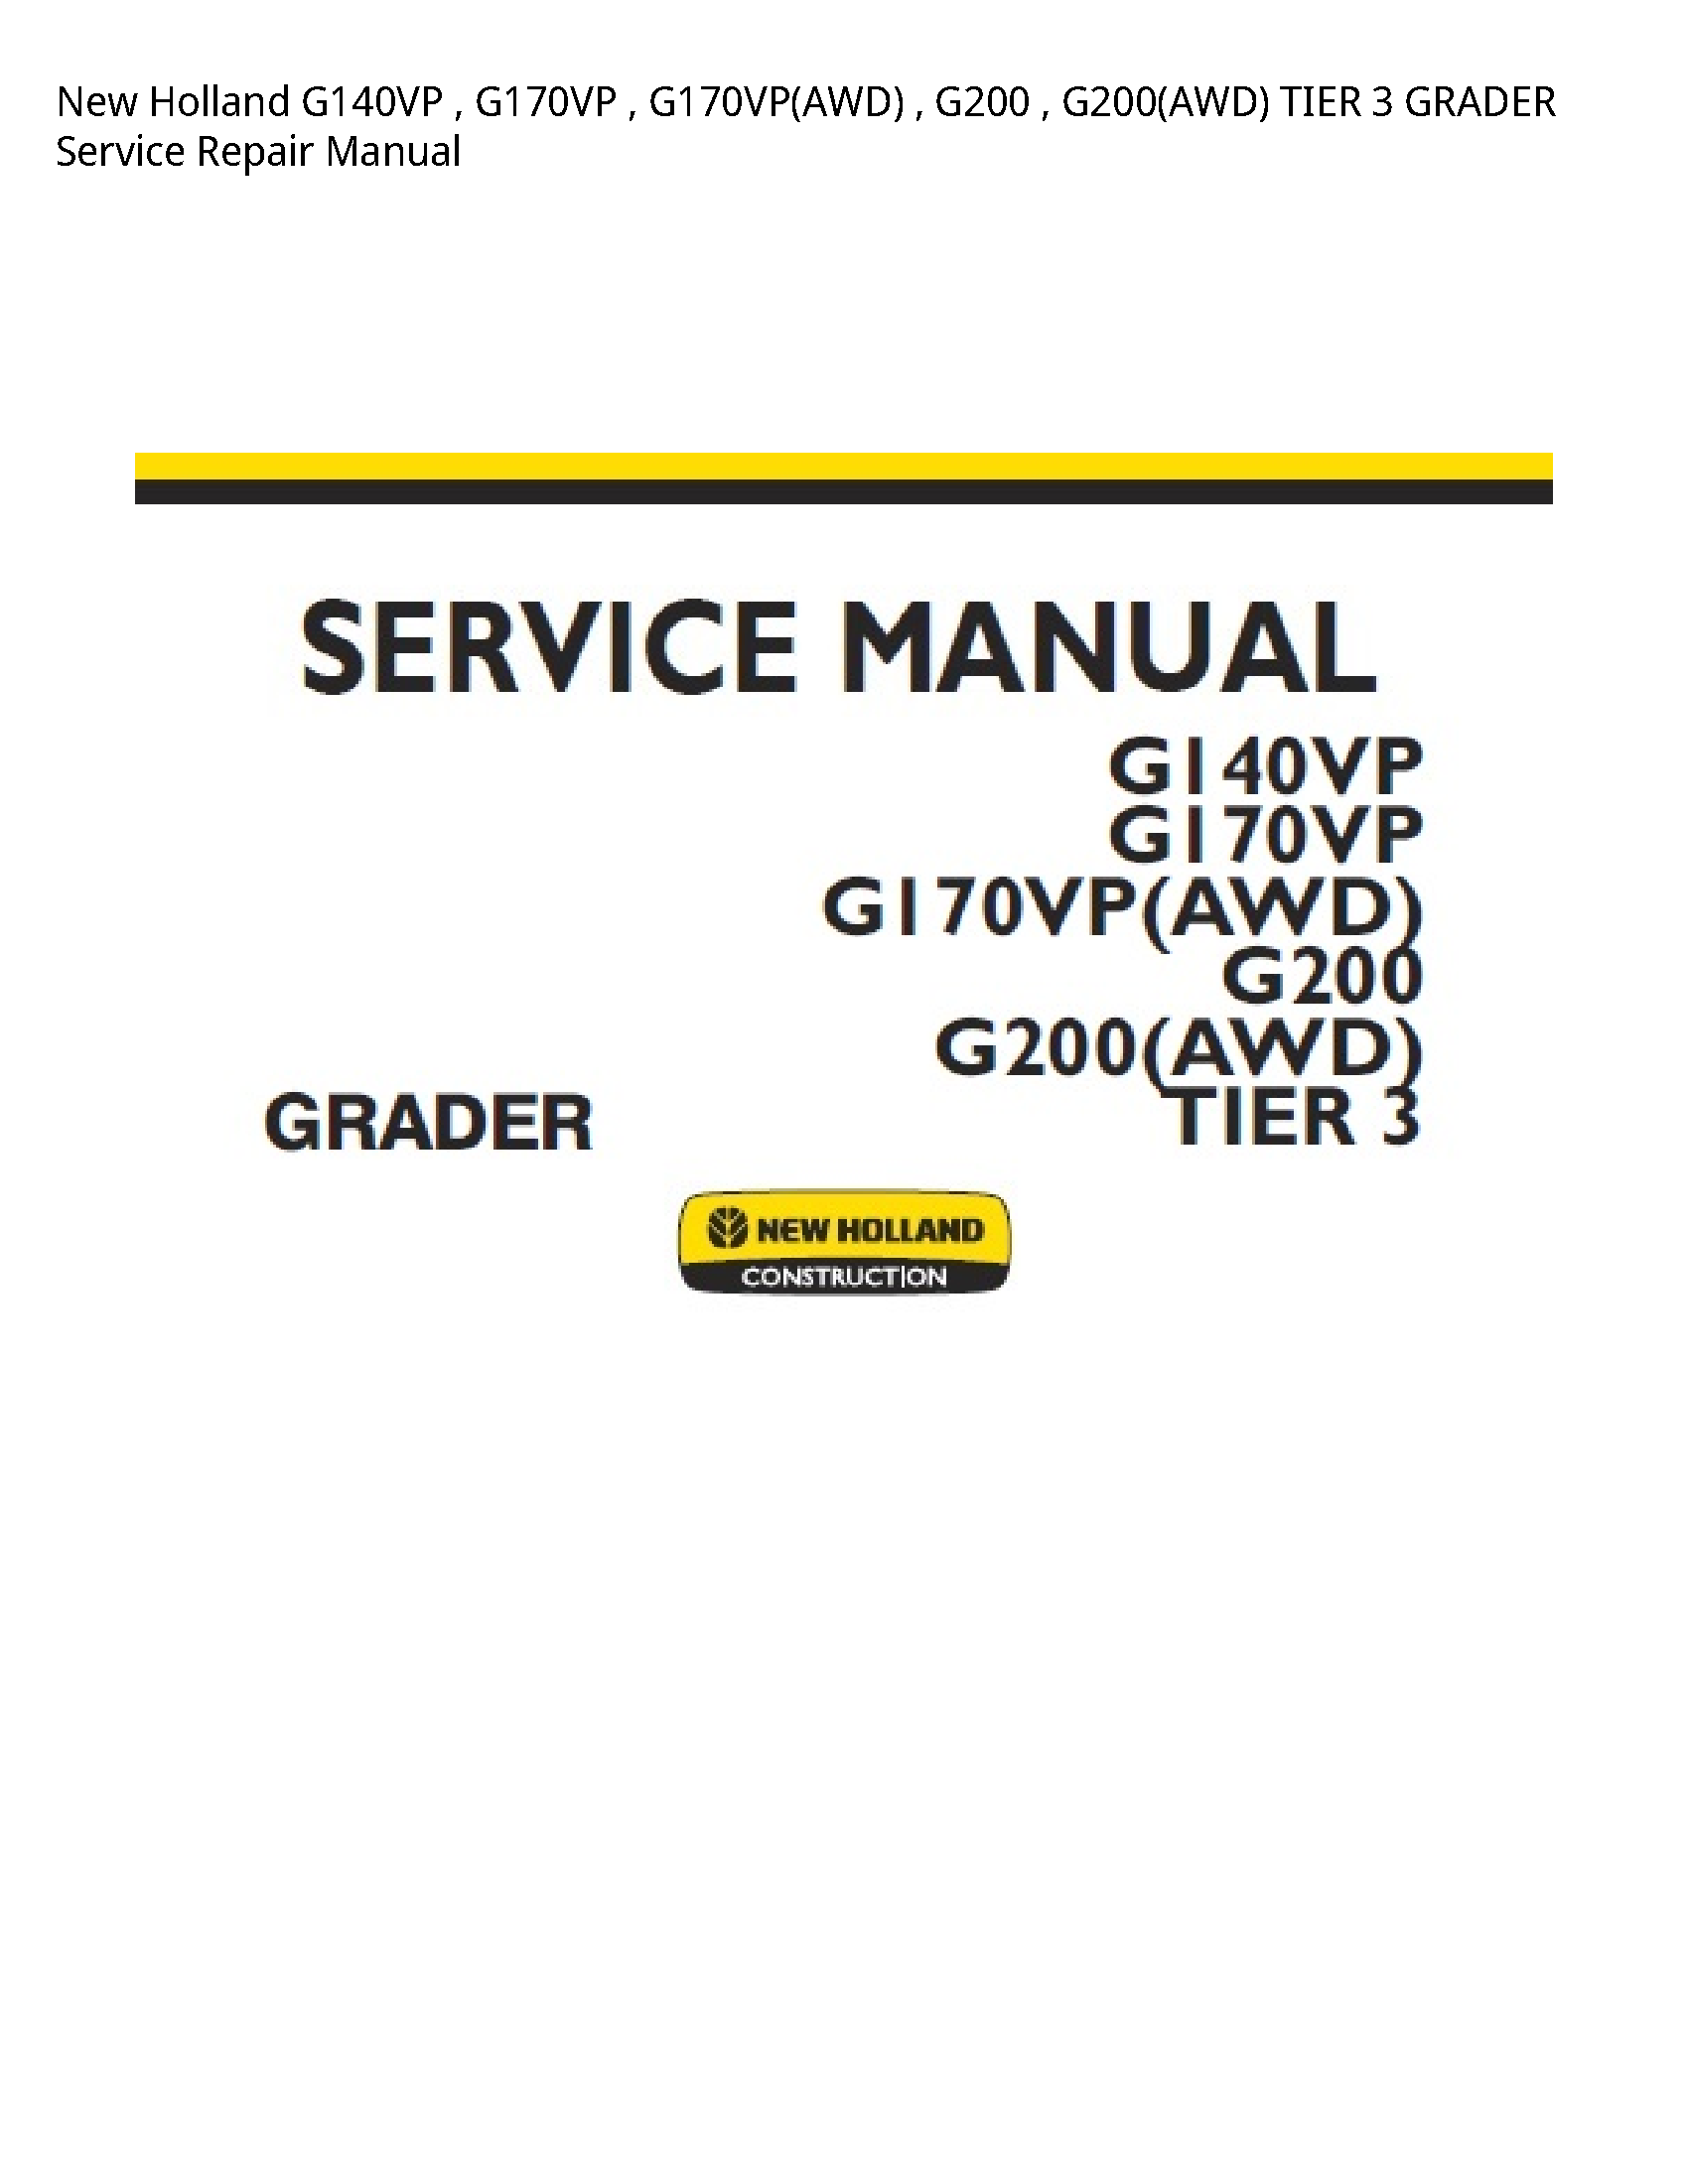 New Holland G140VP TIER GRADER manual